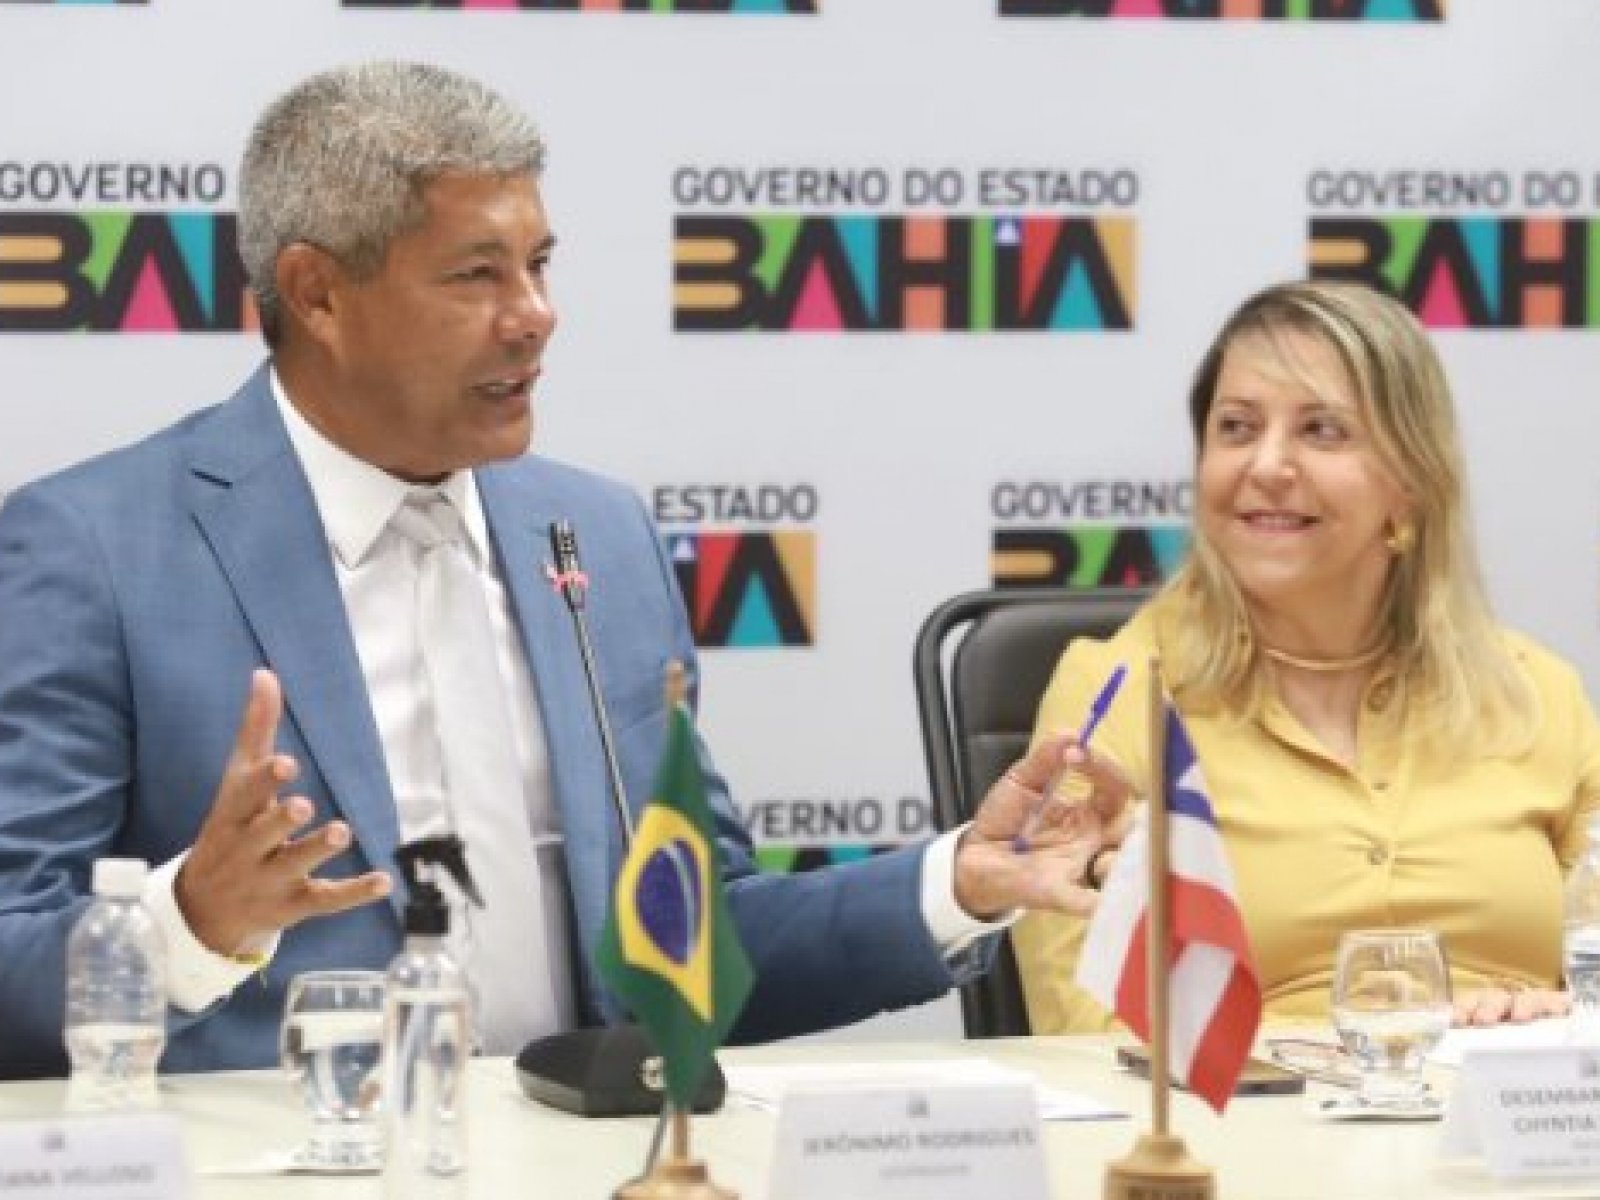 Cynthia Resende, presidente do TJ-BA, passa a ser a governadora da Bahia em exercício a partir desta manhã